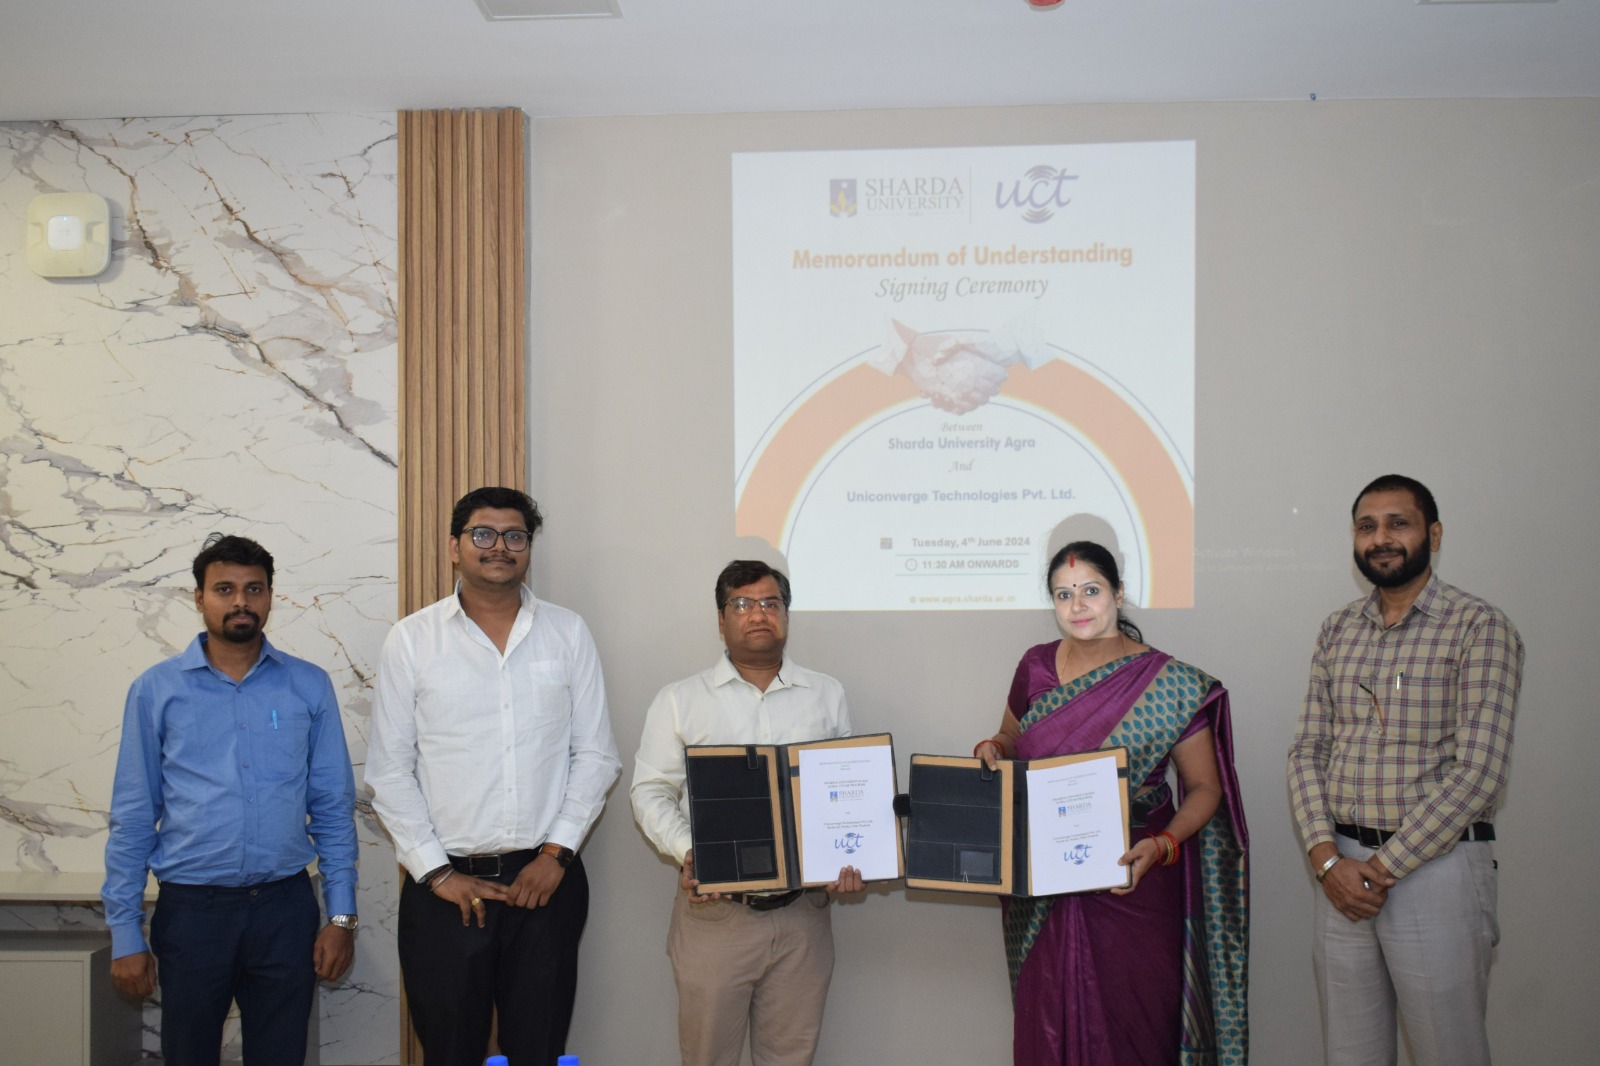 Signed MOU with Uniconvergence Technologies - Sharda University Agra